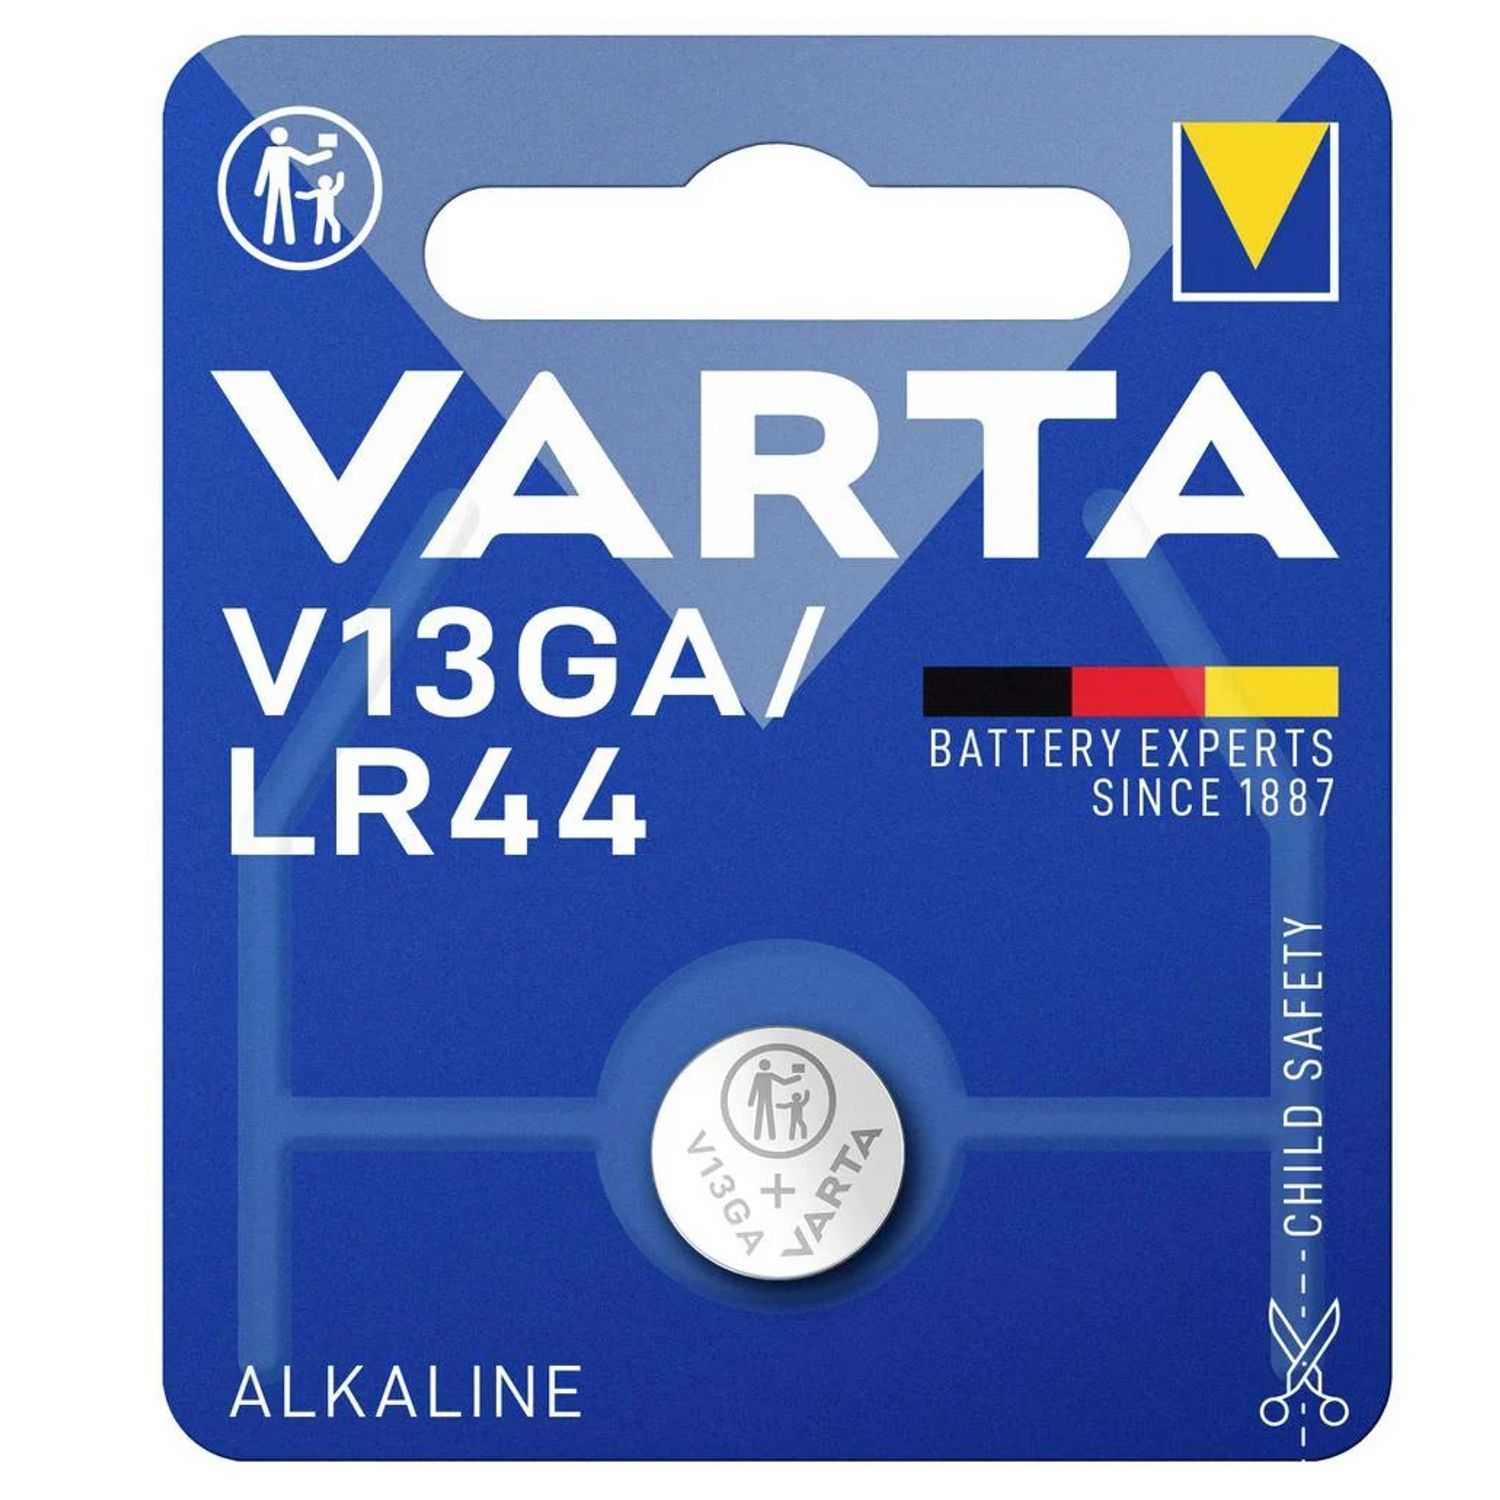 Varta V13GA Uhrenbatterie LR44, LR1154